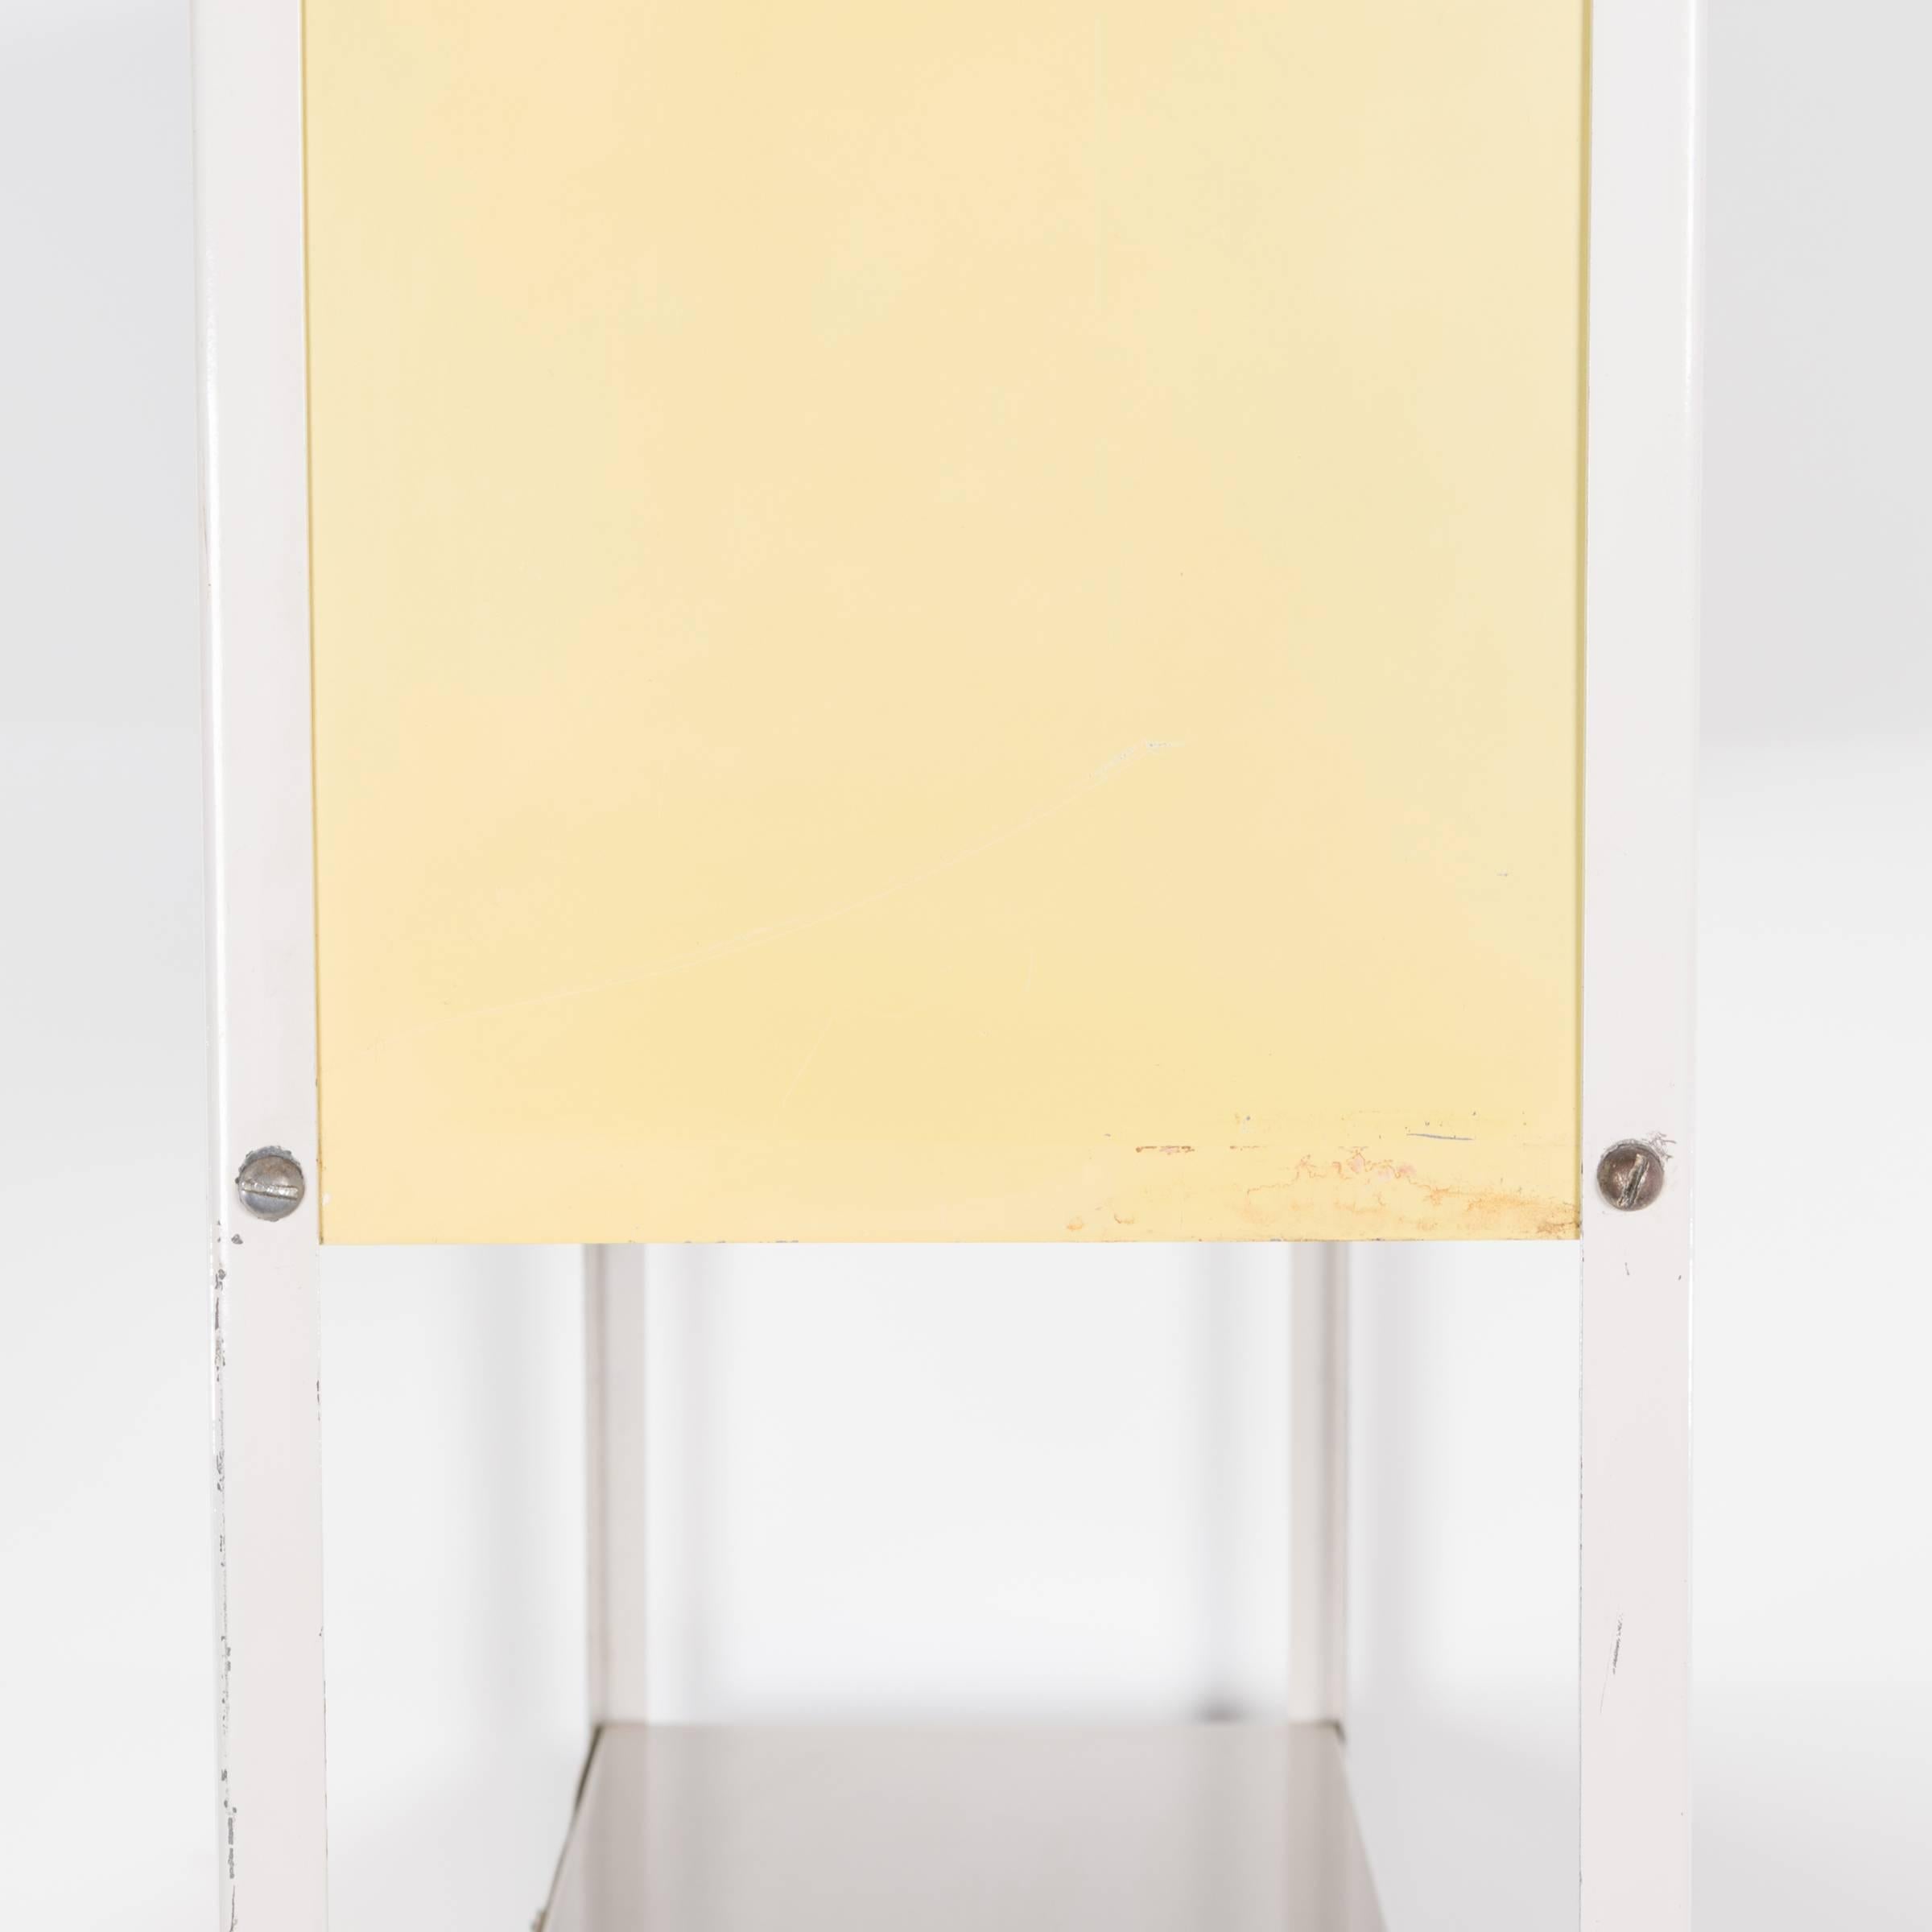 Steel Modular Bookcase or Room Divider by Friso Kramer for Asmeta, Netherlands